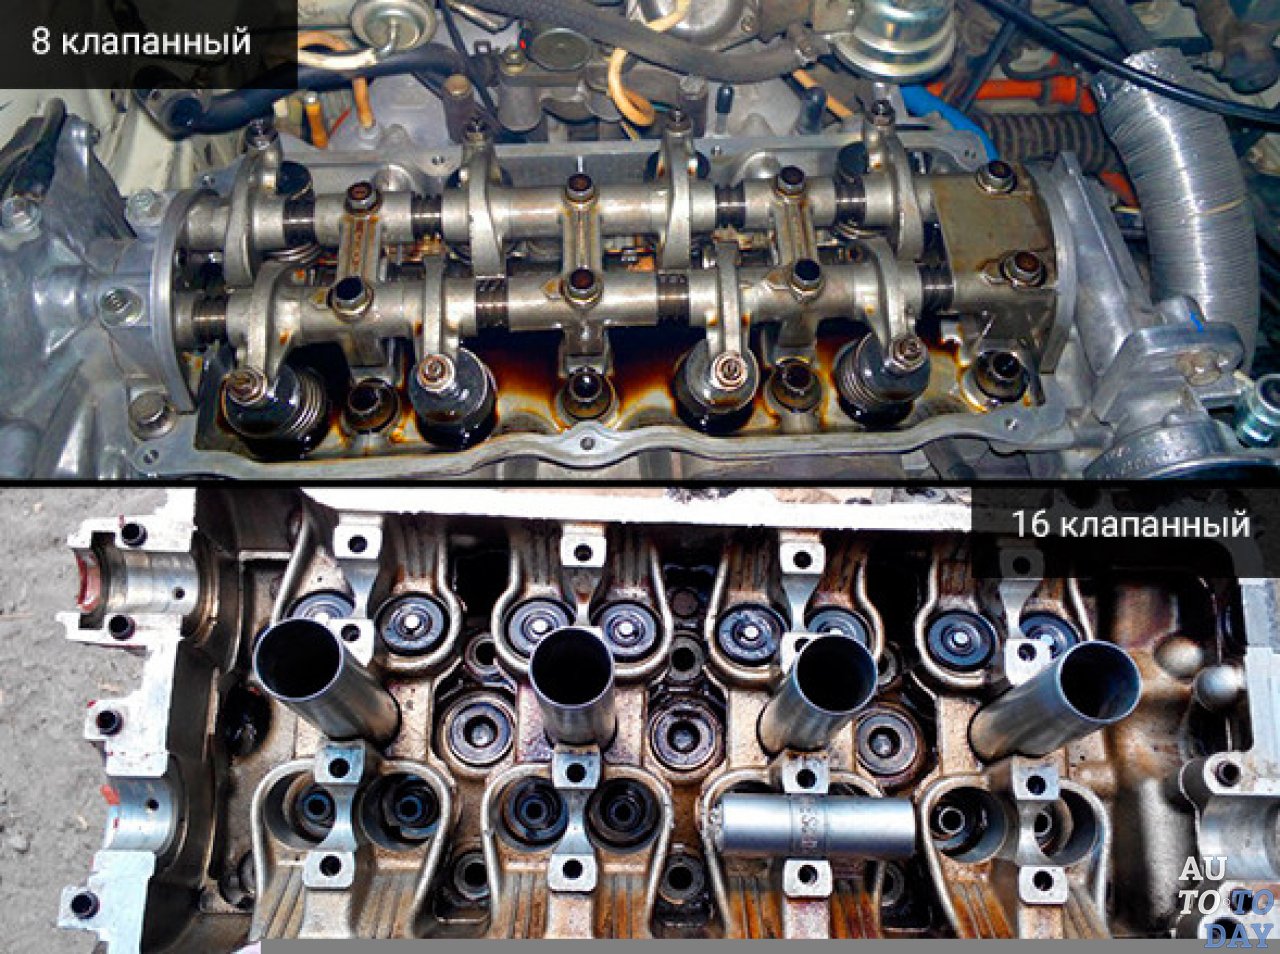 Различие клапанов. Двигатель от ВАЗ 8 И 16 клапанов. Двигатель 8 клапанов и 16 клапанов на ВАЗ. Отличие 8 и 16 клапанных двигателей ВАЗ. ВАЗ 8 И 16 клапанный.